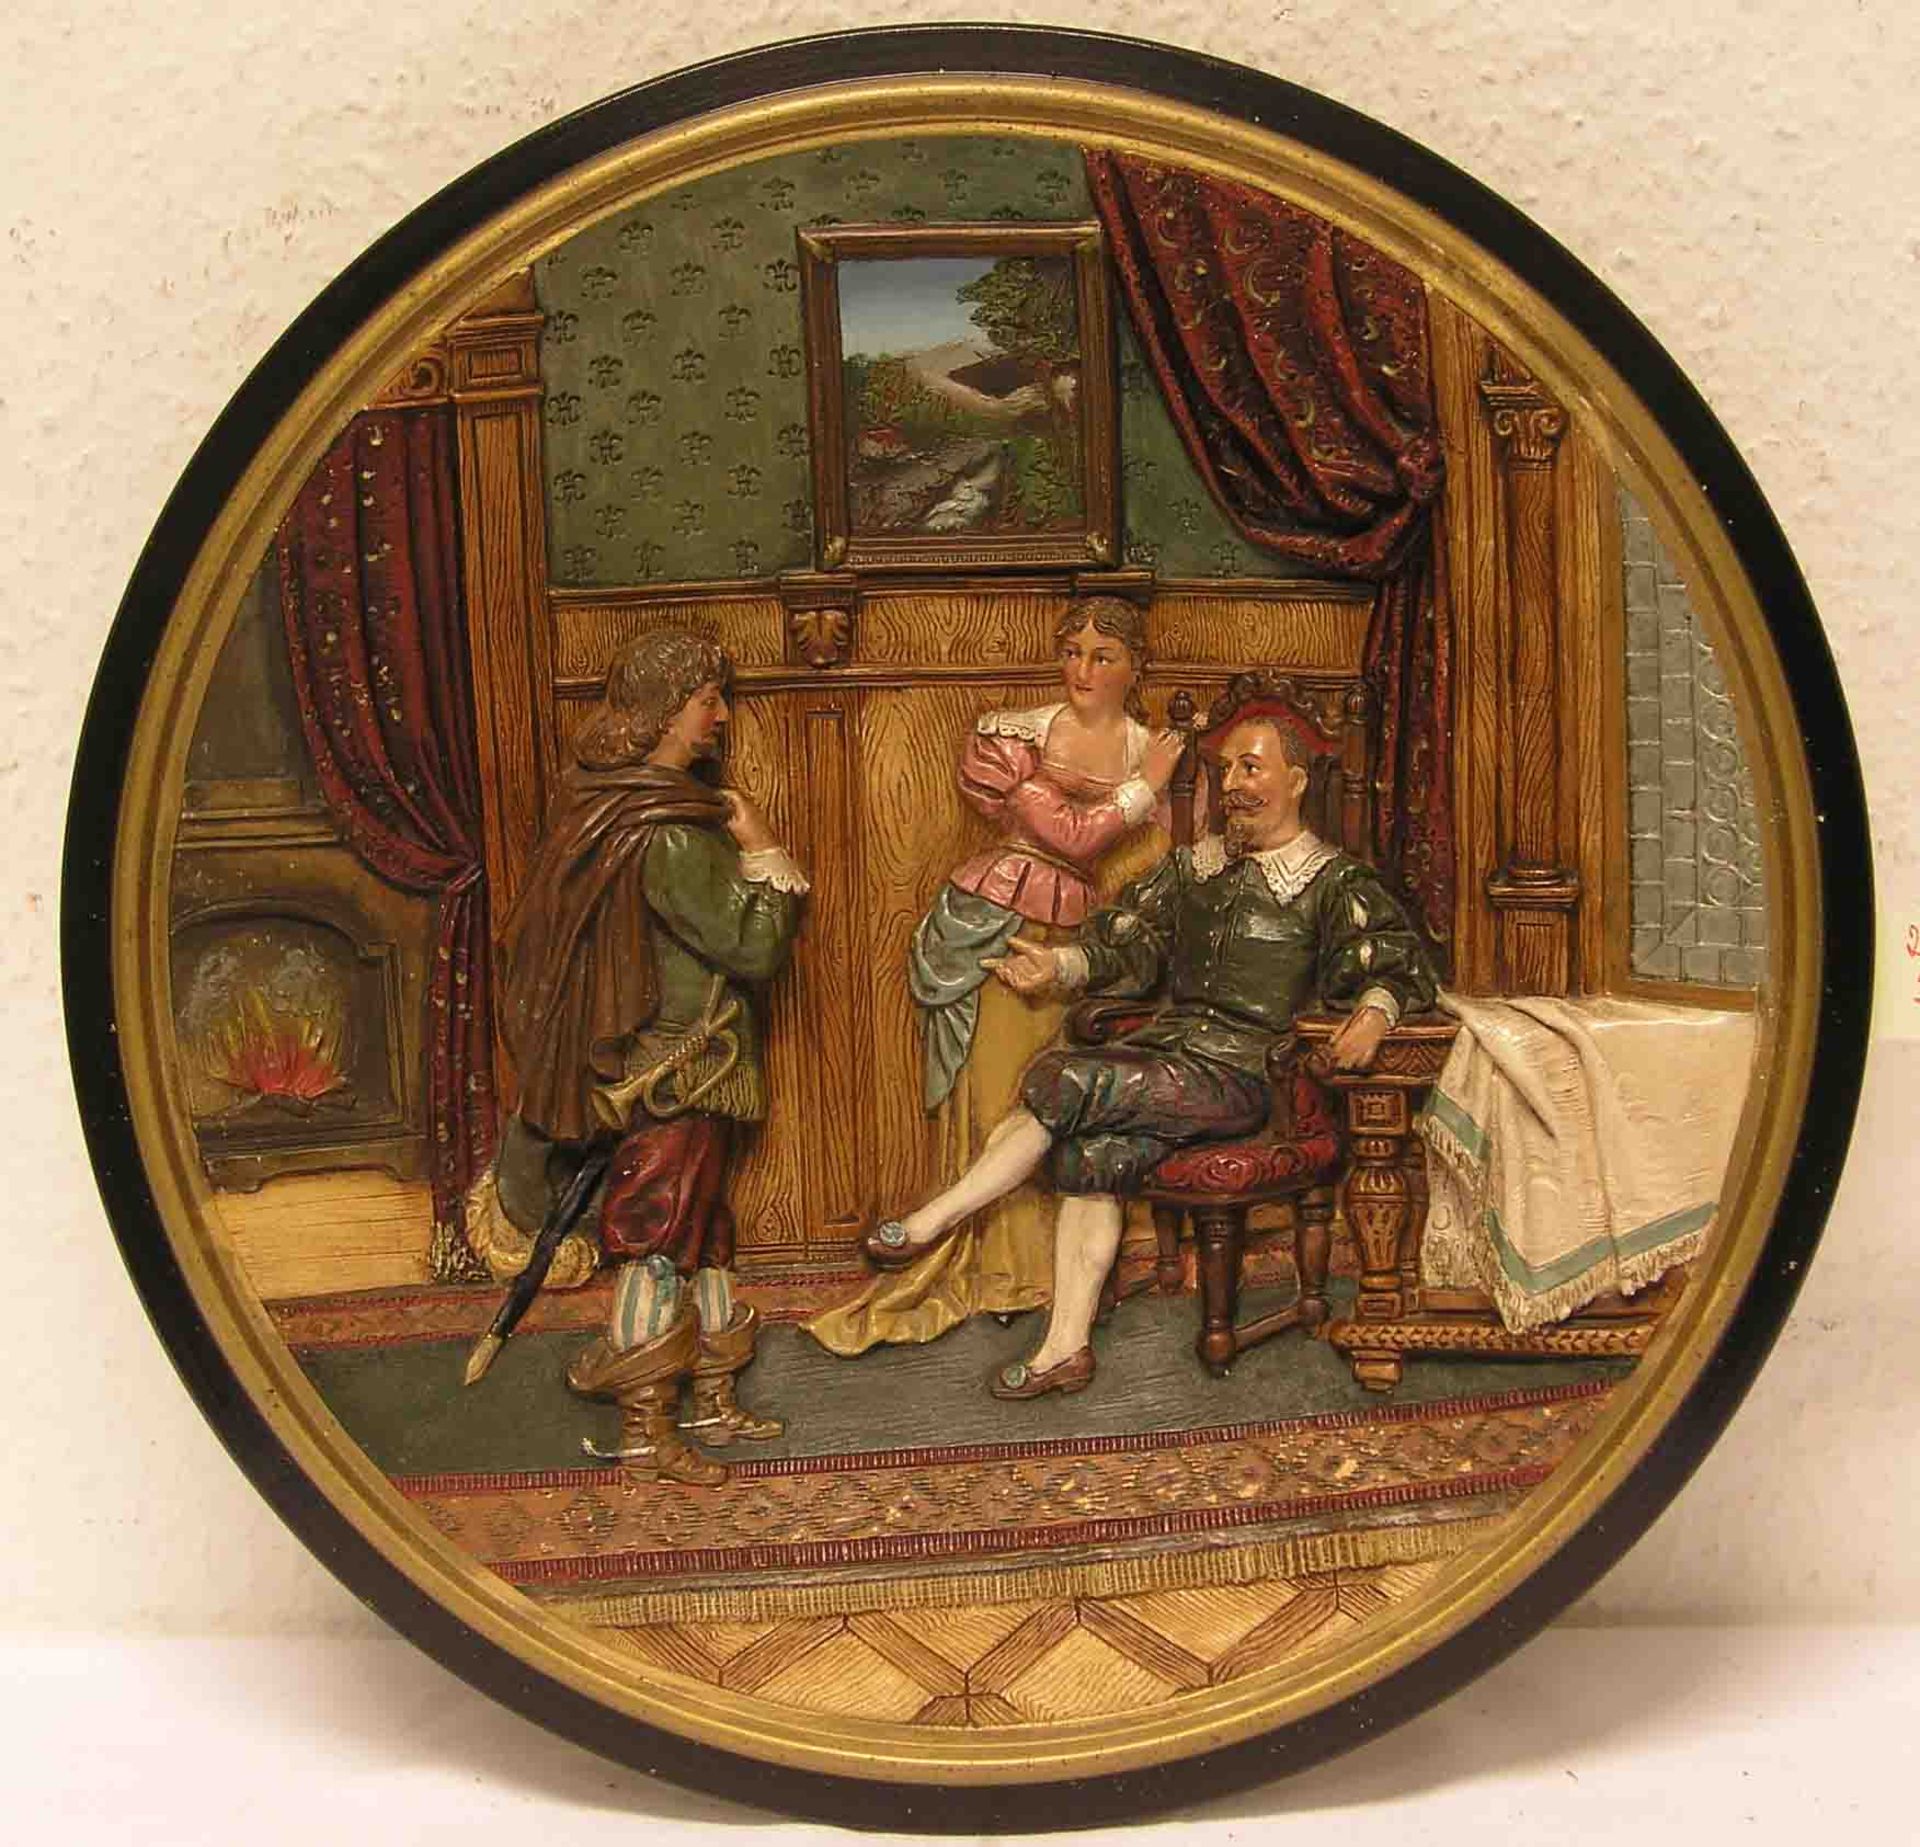 Wandteller. Historismus. Keramik. Relief: "Ritter beim Bowle trinken". Farbig staffiert.Durchmesser: